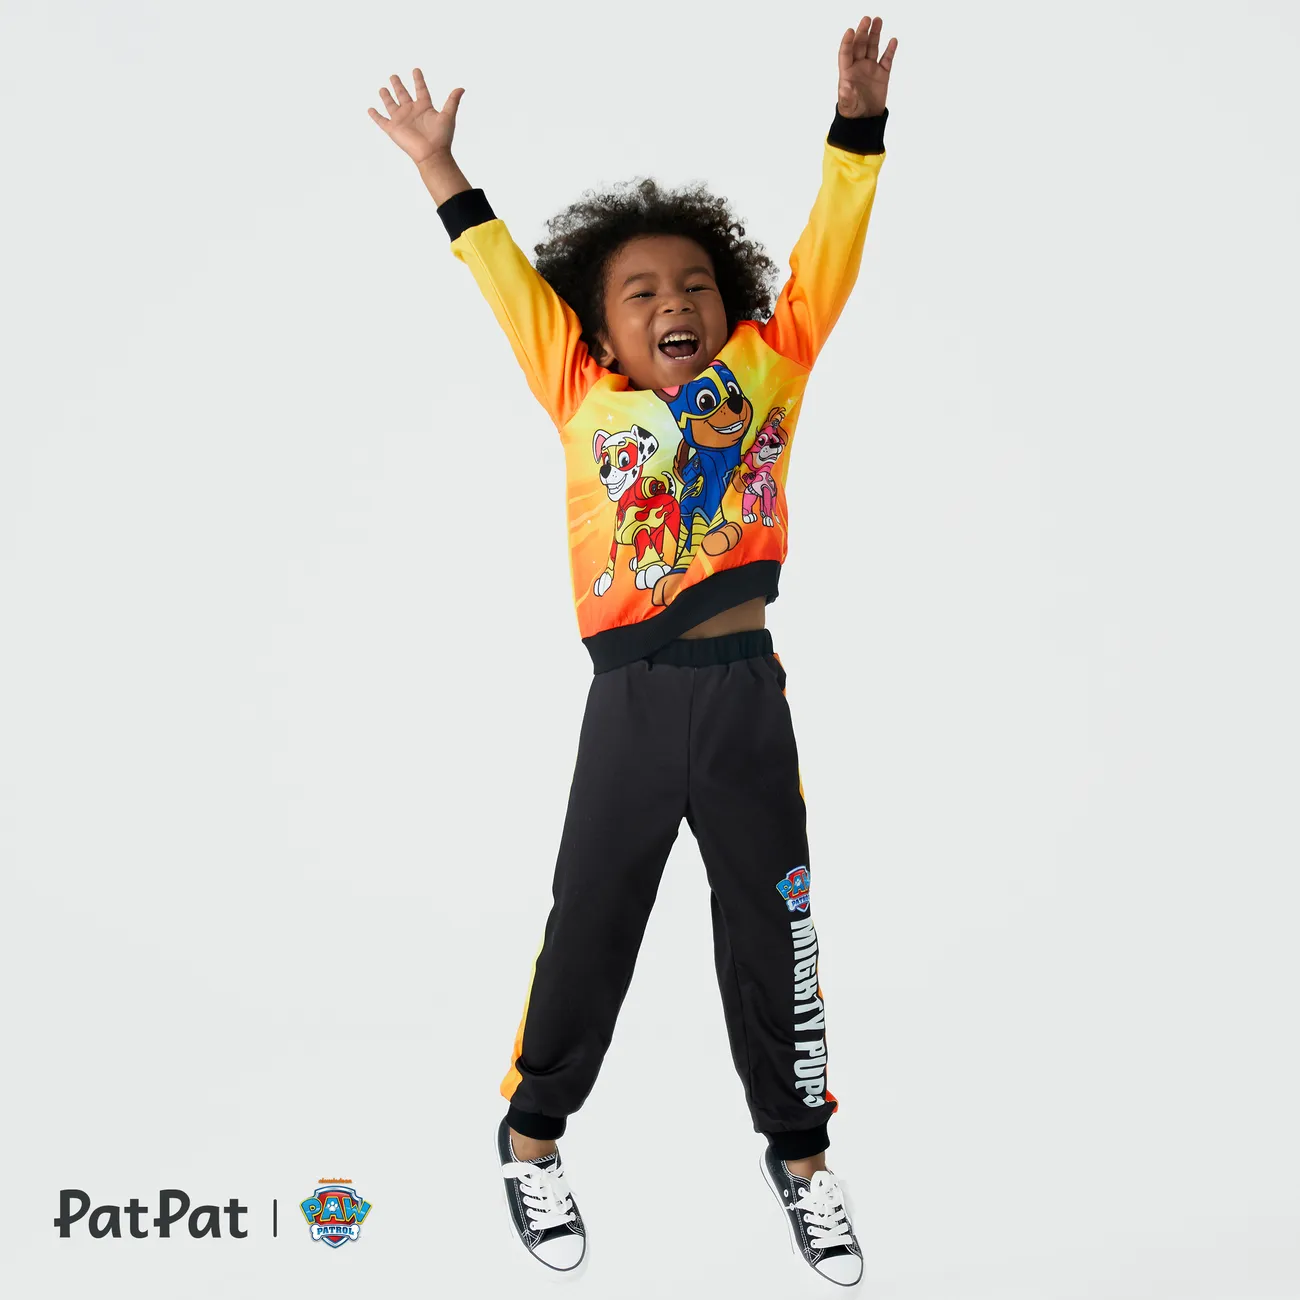 Paw Patrol Toddler Boy Character Print Round Neck Sweatshirt or Pants Orangeyellow big image 1